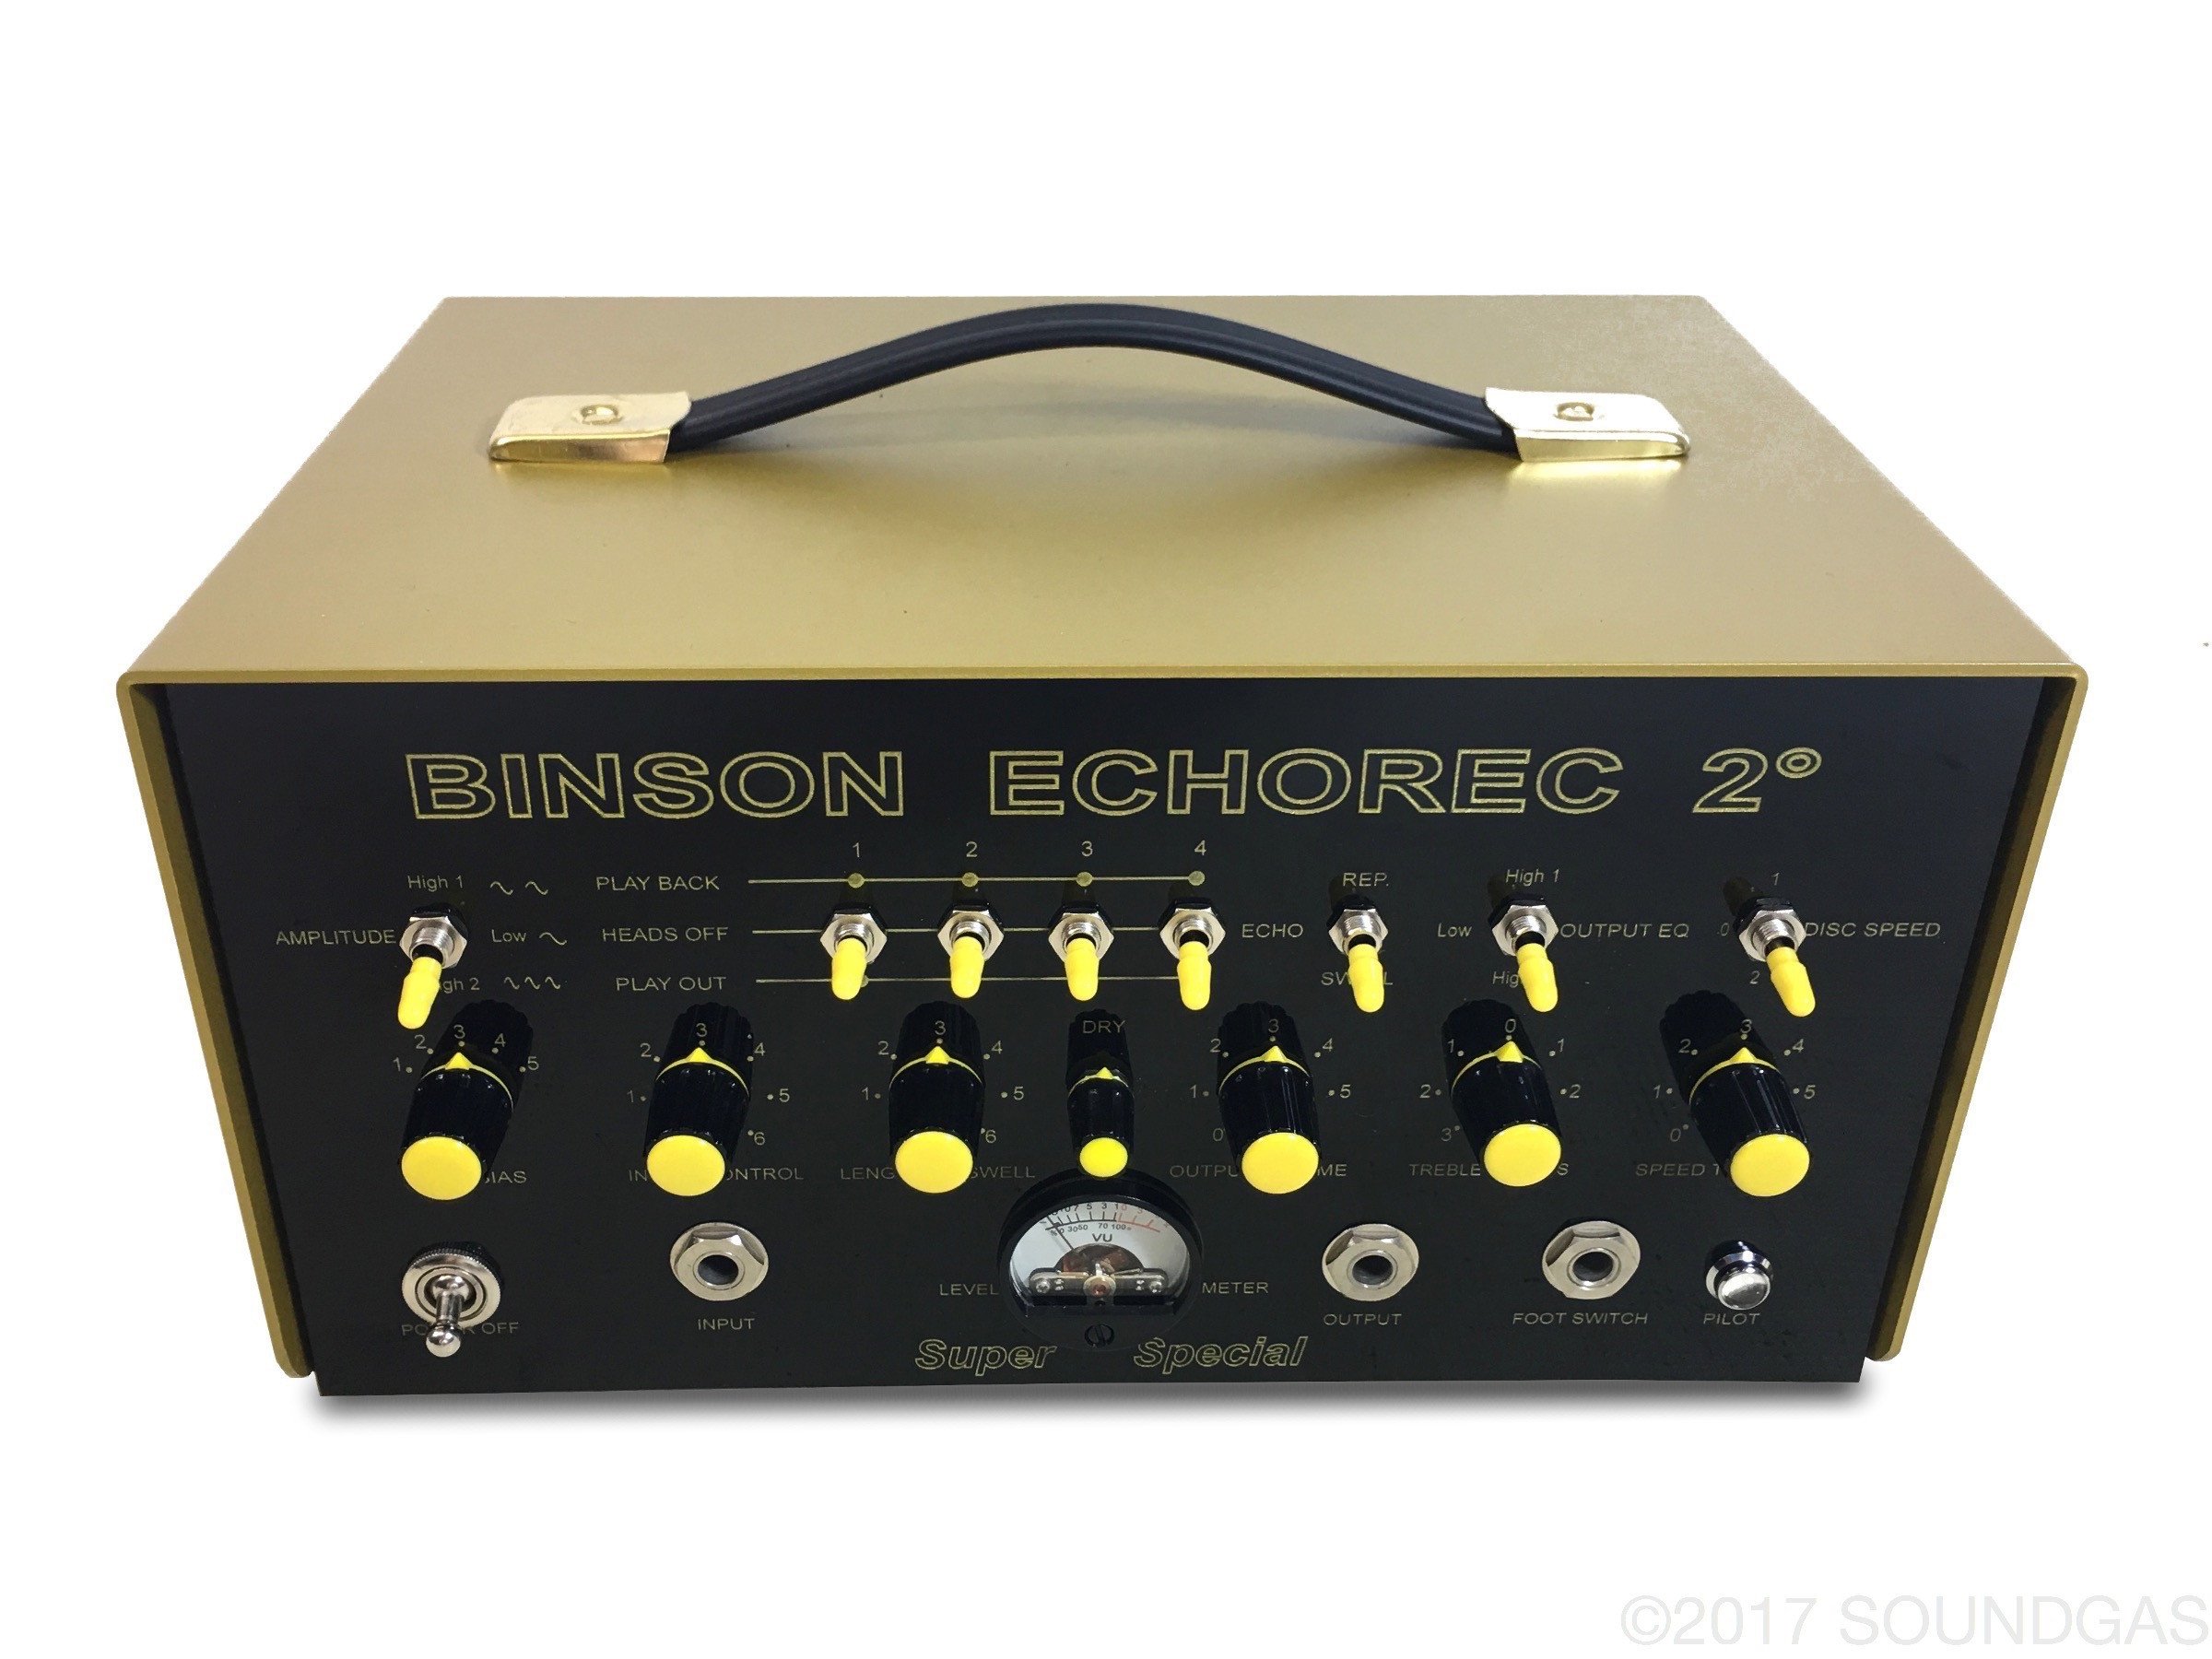 Binson-Echorec-2-Super-Special-Echo-Cover-2